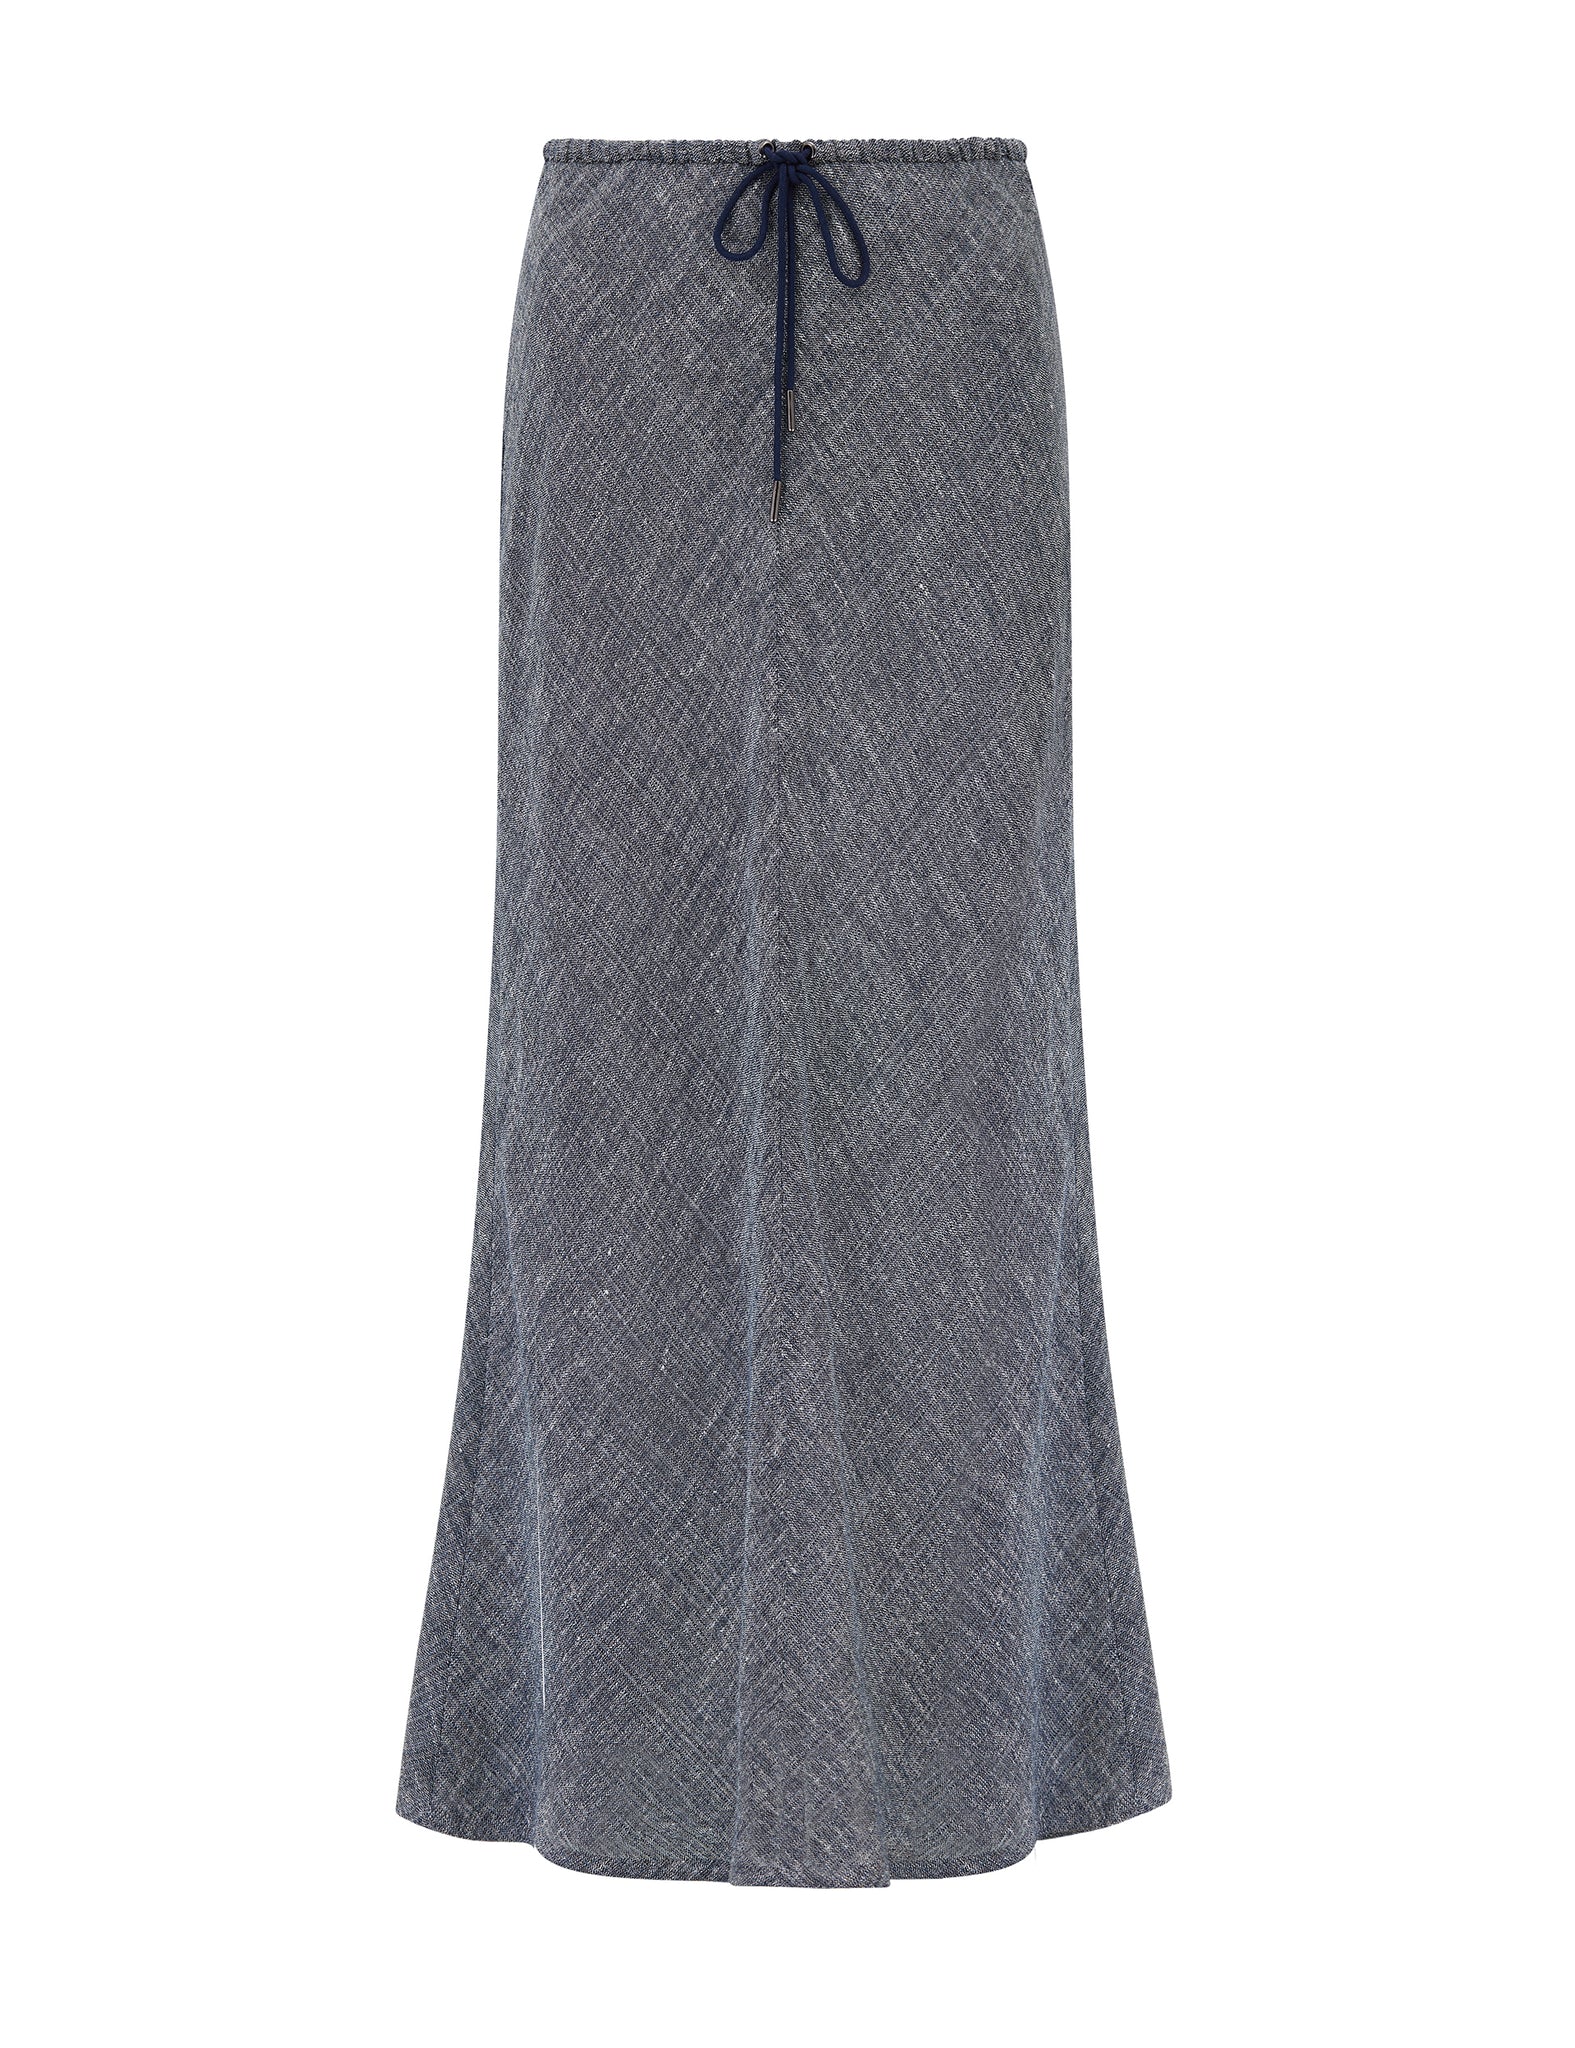 PHOEBE - luxe linen drawstring skirt